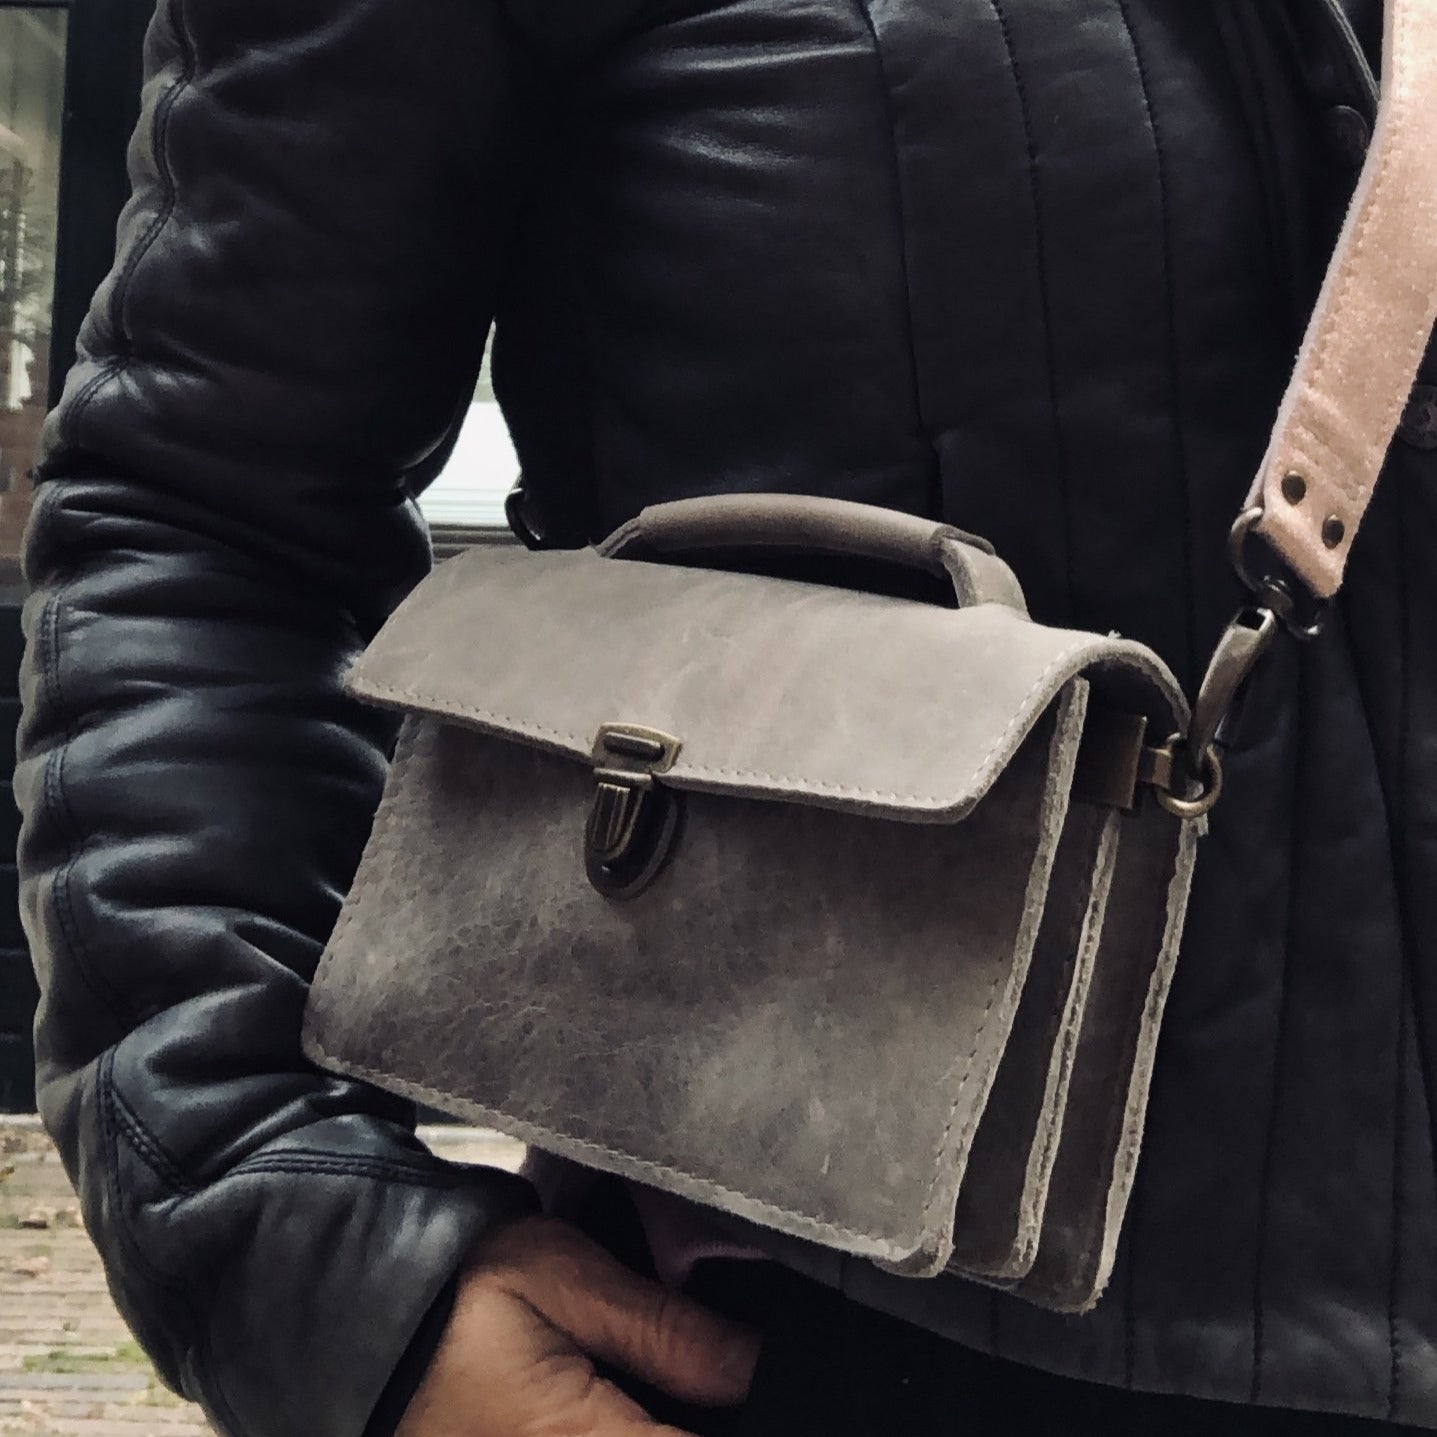 Riga - vandinthertassen - klein schoudertasje, twee vakken en een ritsvakje. Met of zonder schouderband te dragen